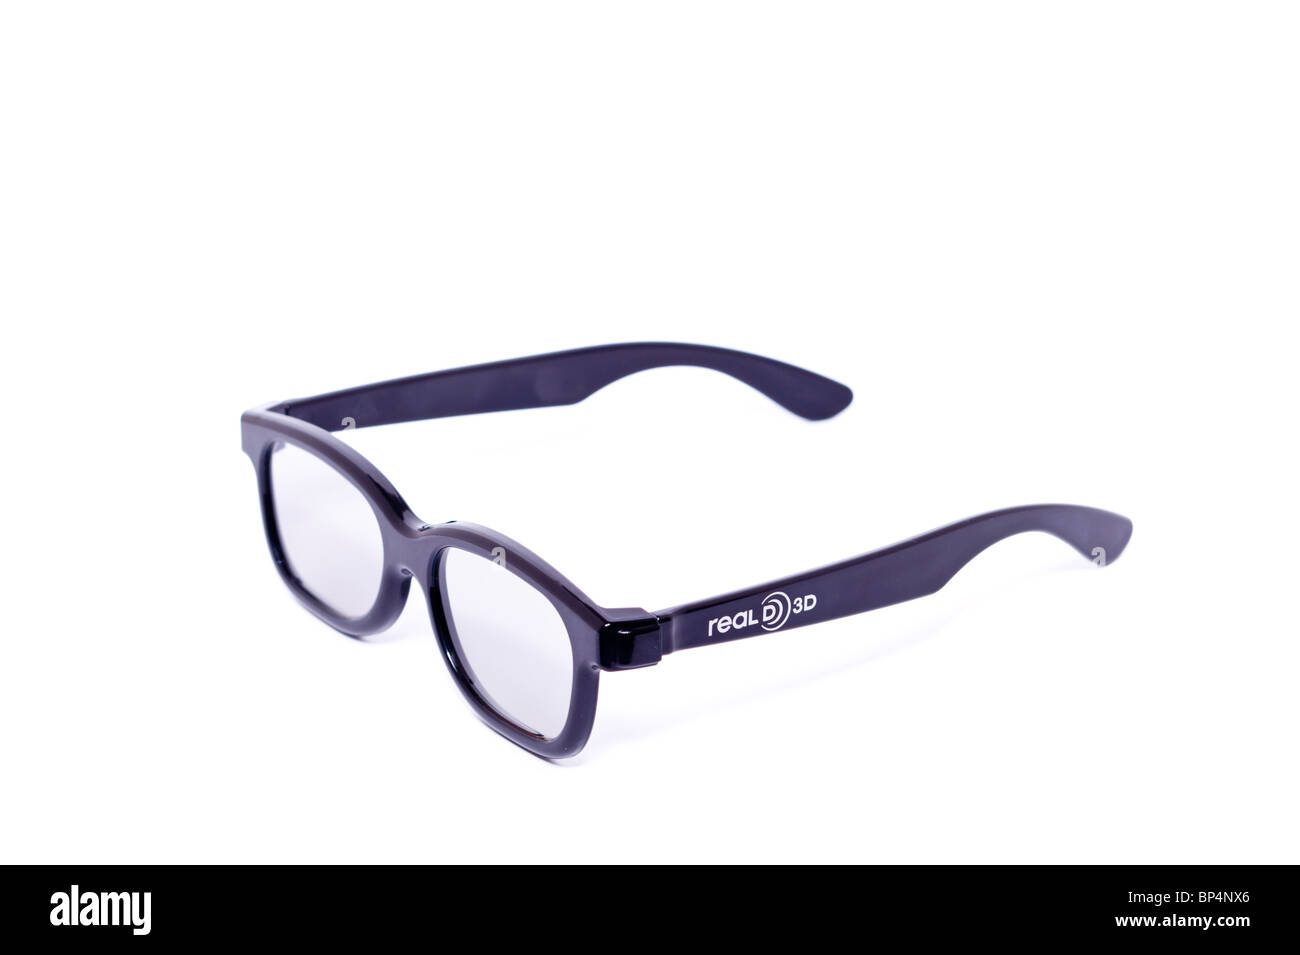 Einen Ausschnitt aus einem Paar von real D 3D Brille für 3D Filme auf einem weißen Hintergrund Stockfoto